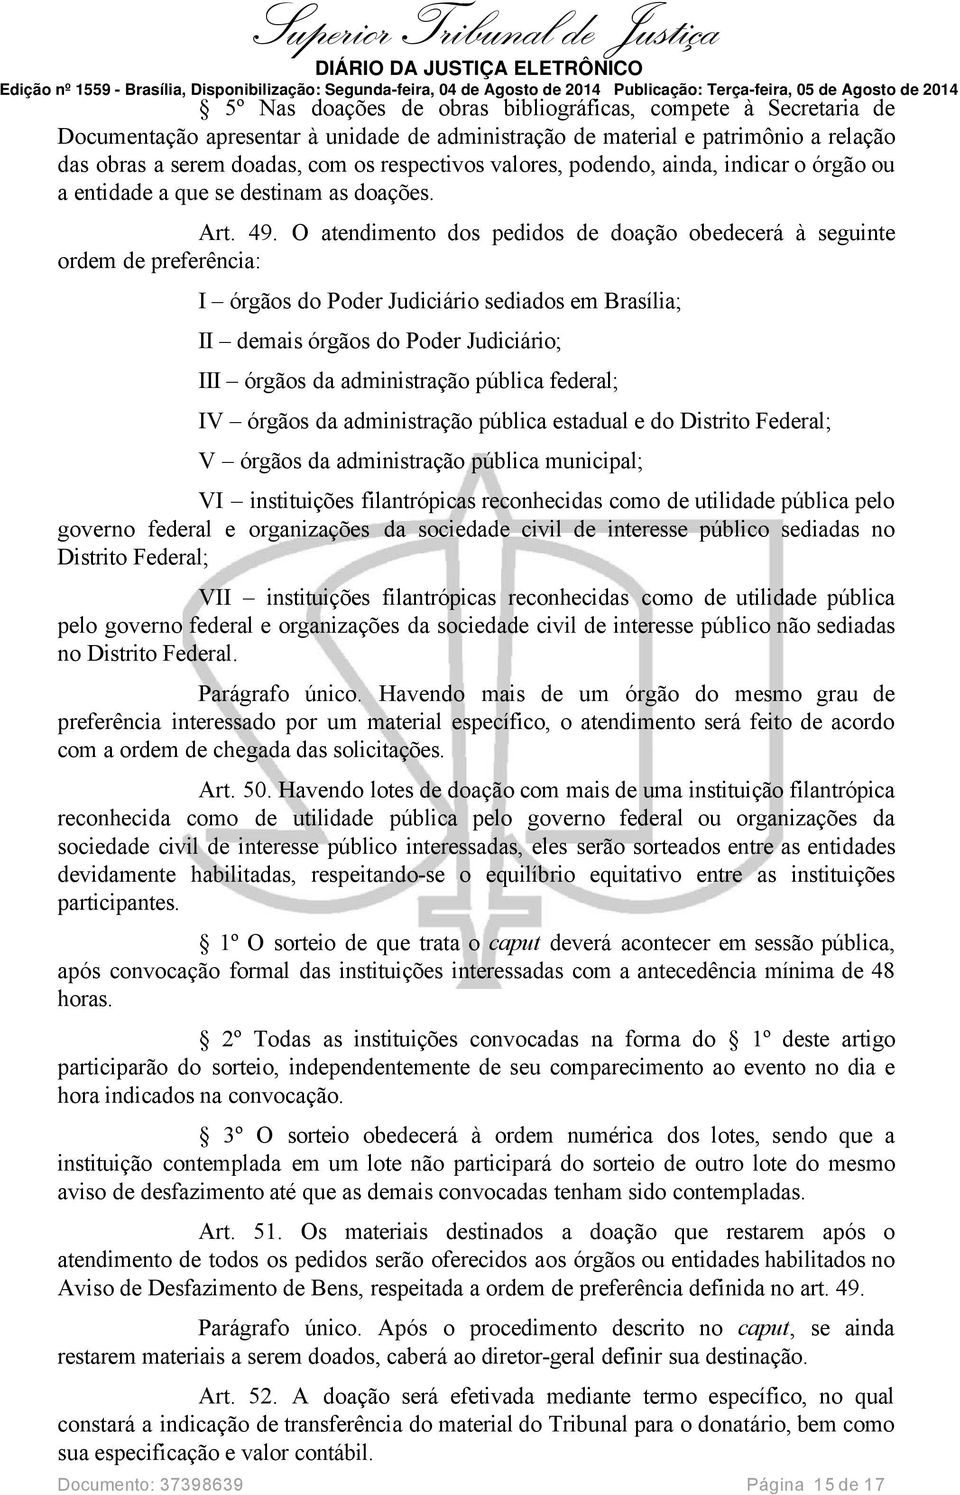 O atendimento dos pedidos de doação obedecerá à seguinte ordem de preferência: I órgãos do Poder Judiciário sediados em Brasília; II demais órgãos do Poder Judiciário; III órgãos da administração